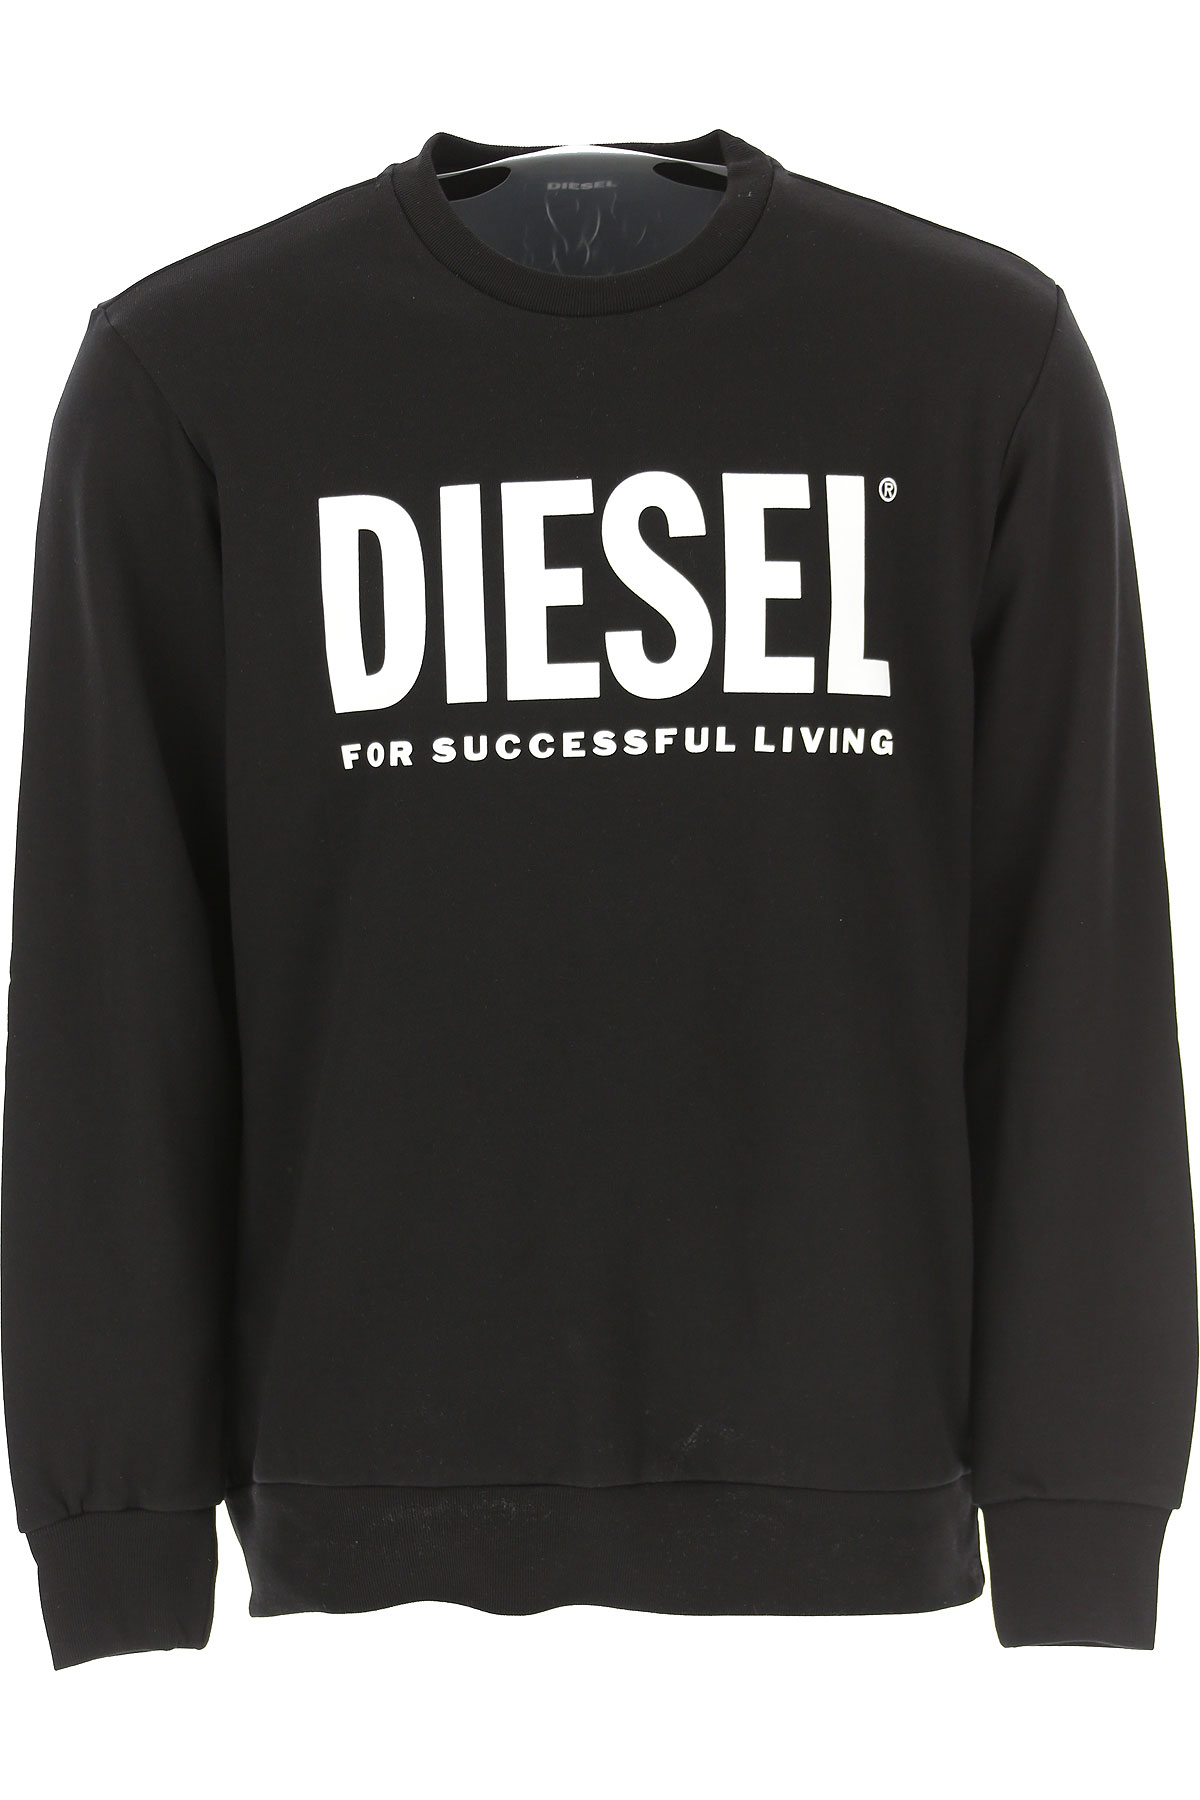 Diesel Sweatshirt für Herren, Kapuzenpulli, Hoodie, Sweats Günstig im Sale, Schwarz, Baumwolle, 2017, L M S XL